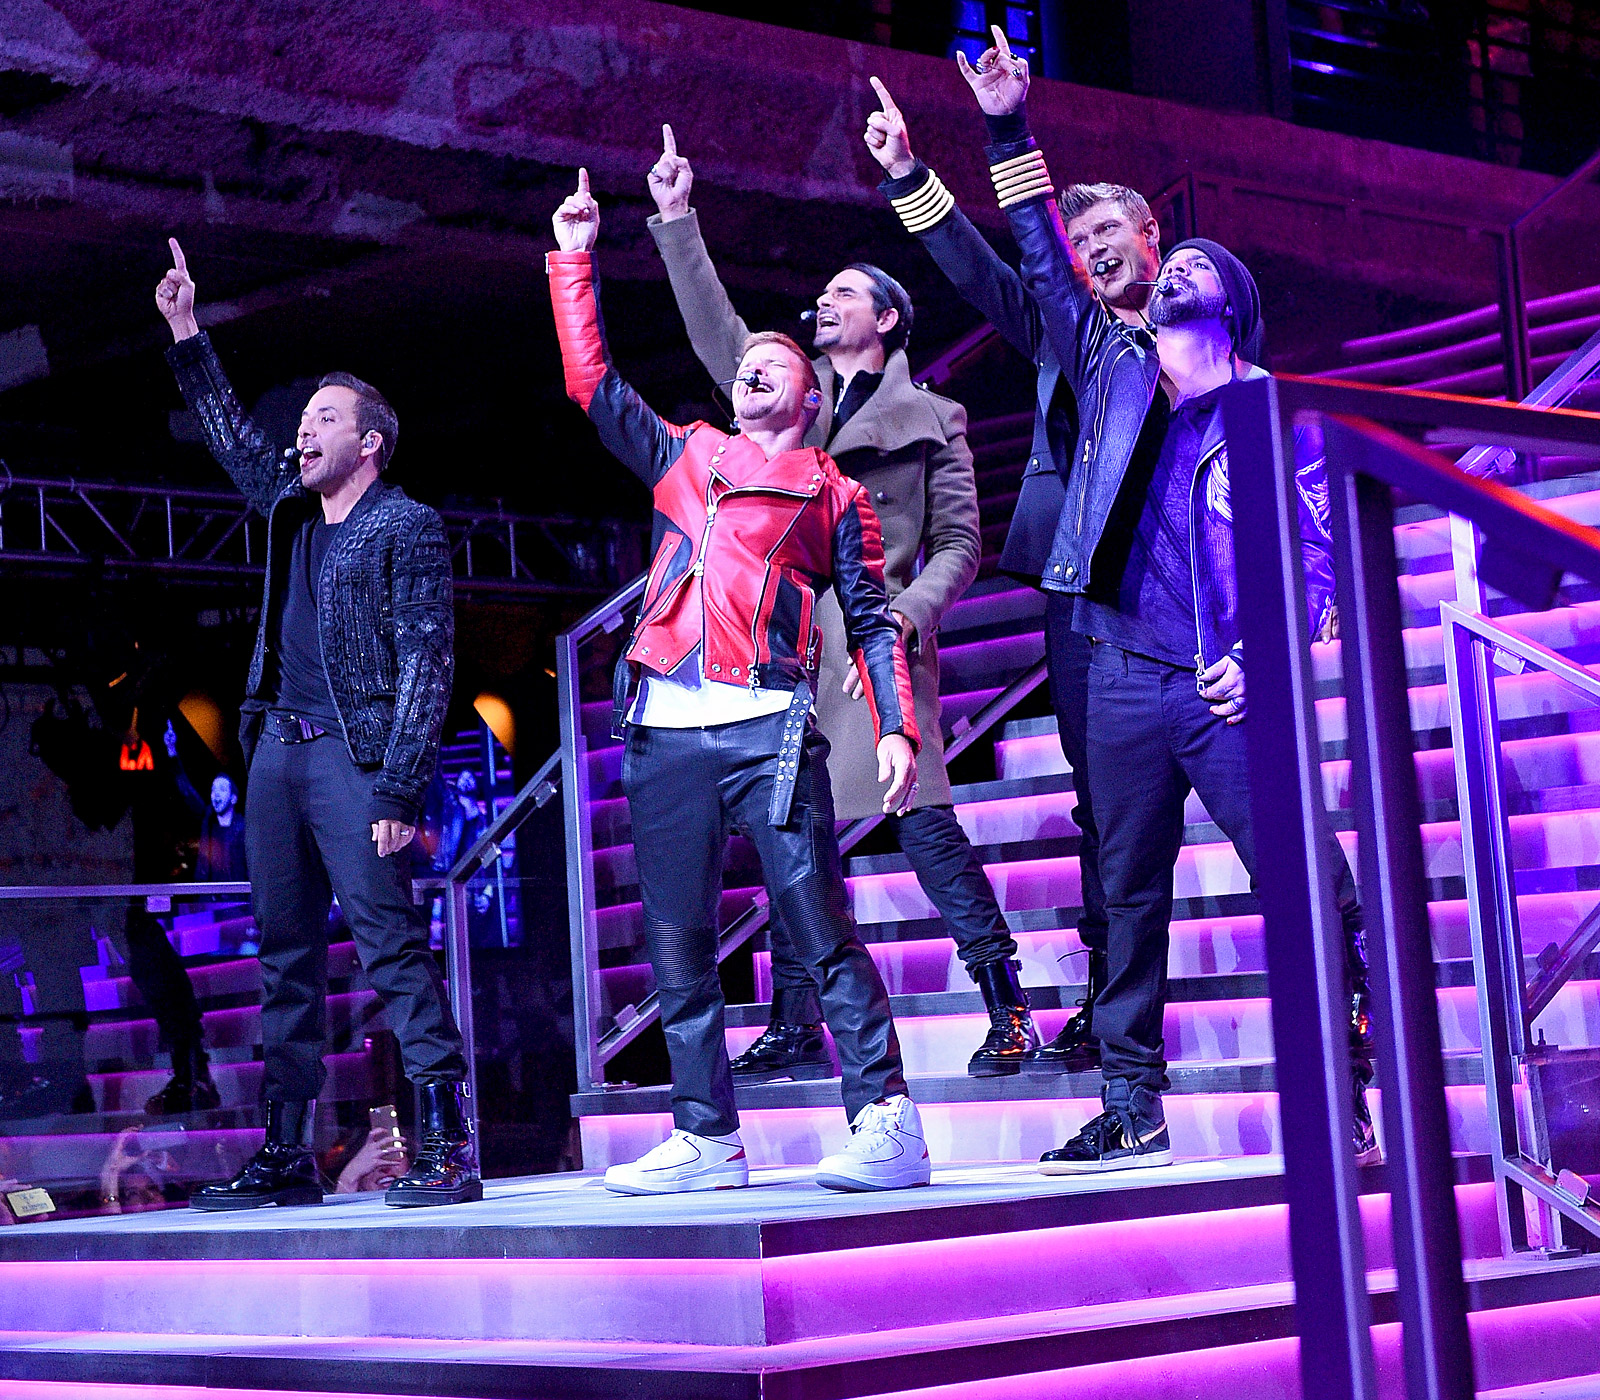 El regreso en grande de los Backstreet Boys y su evolución hasta ahora